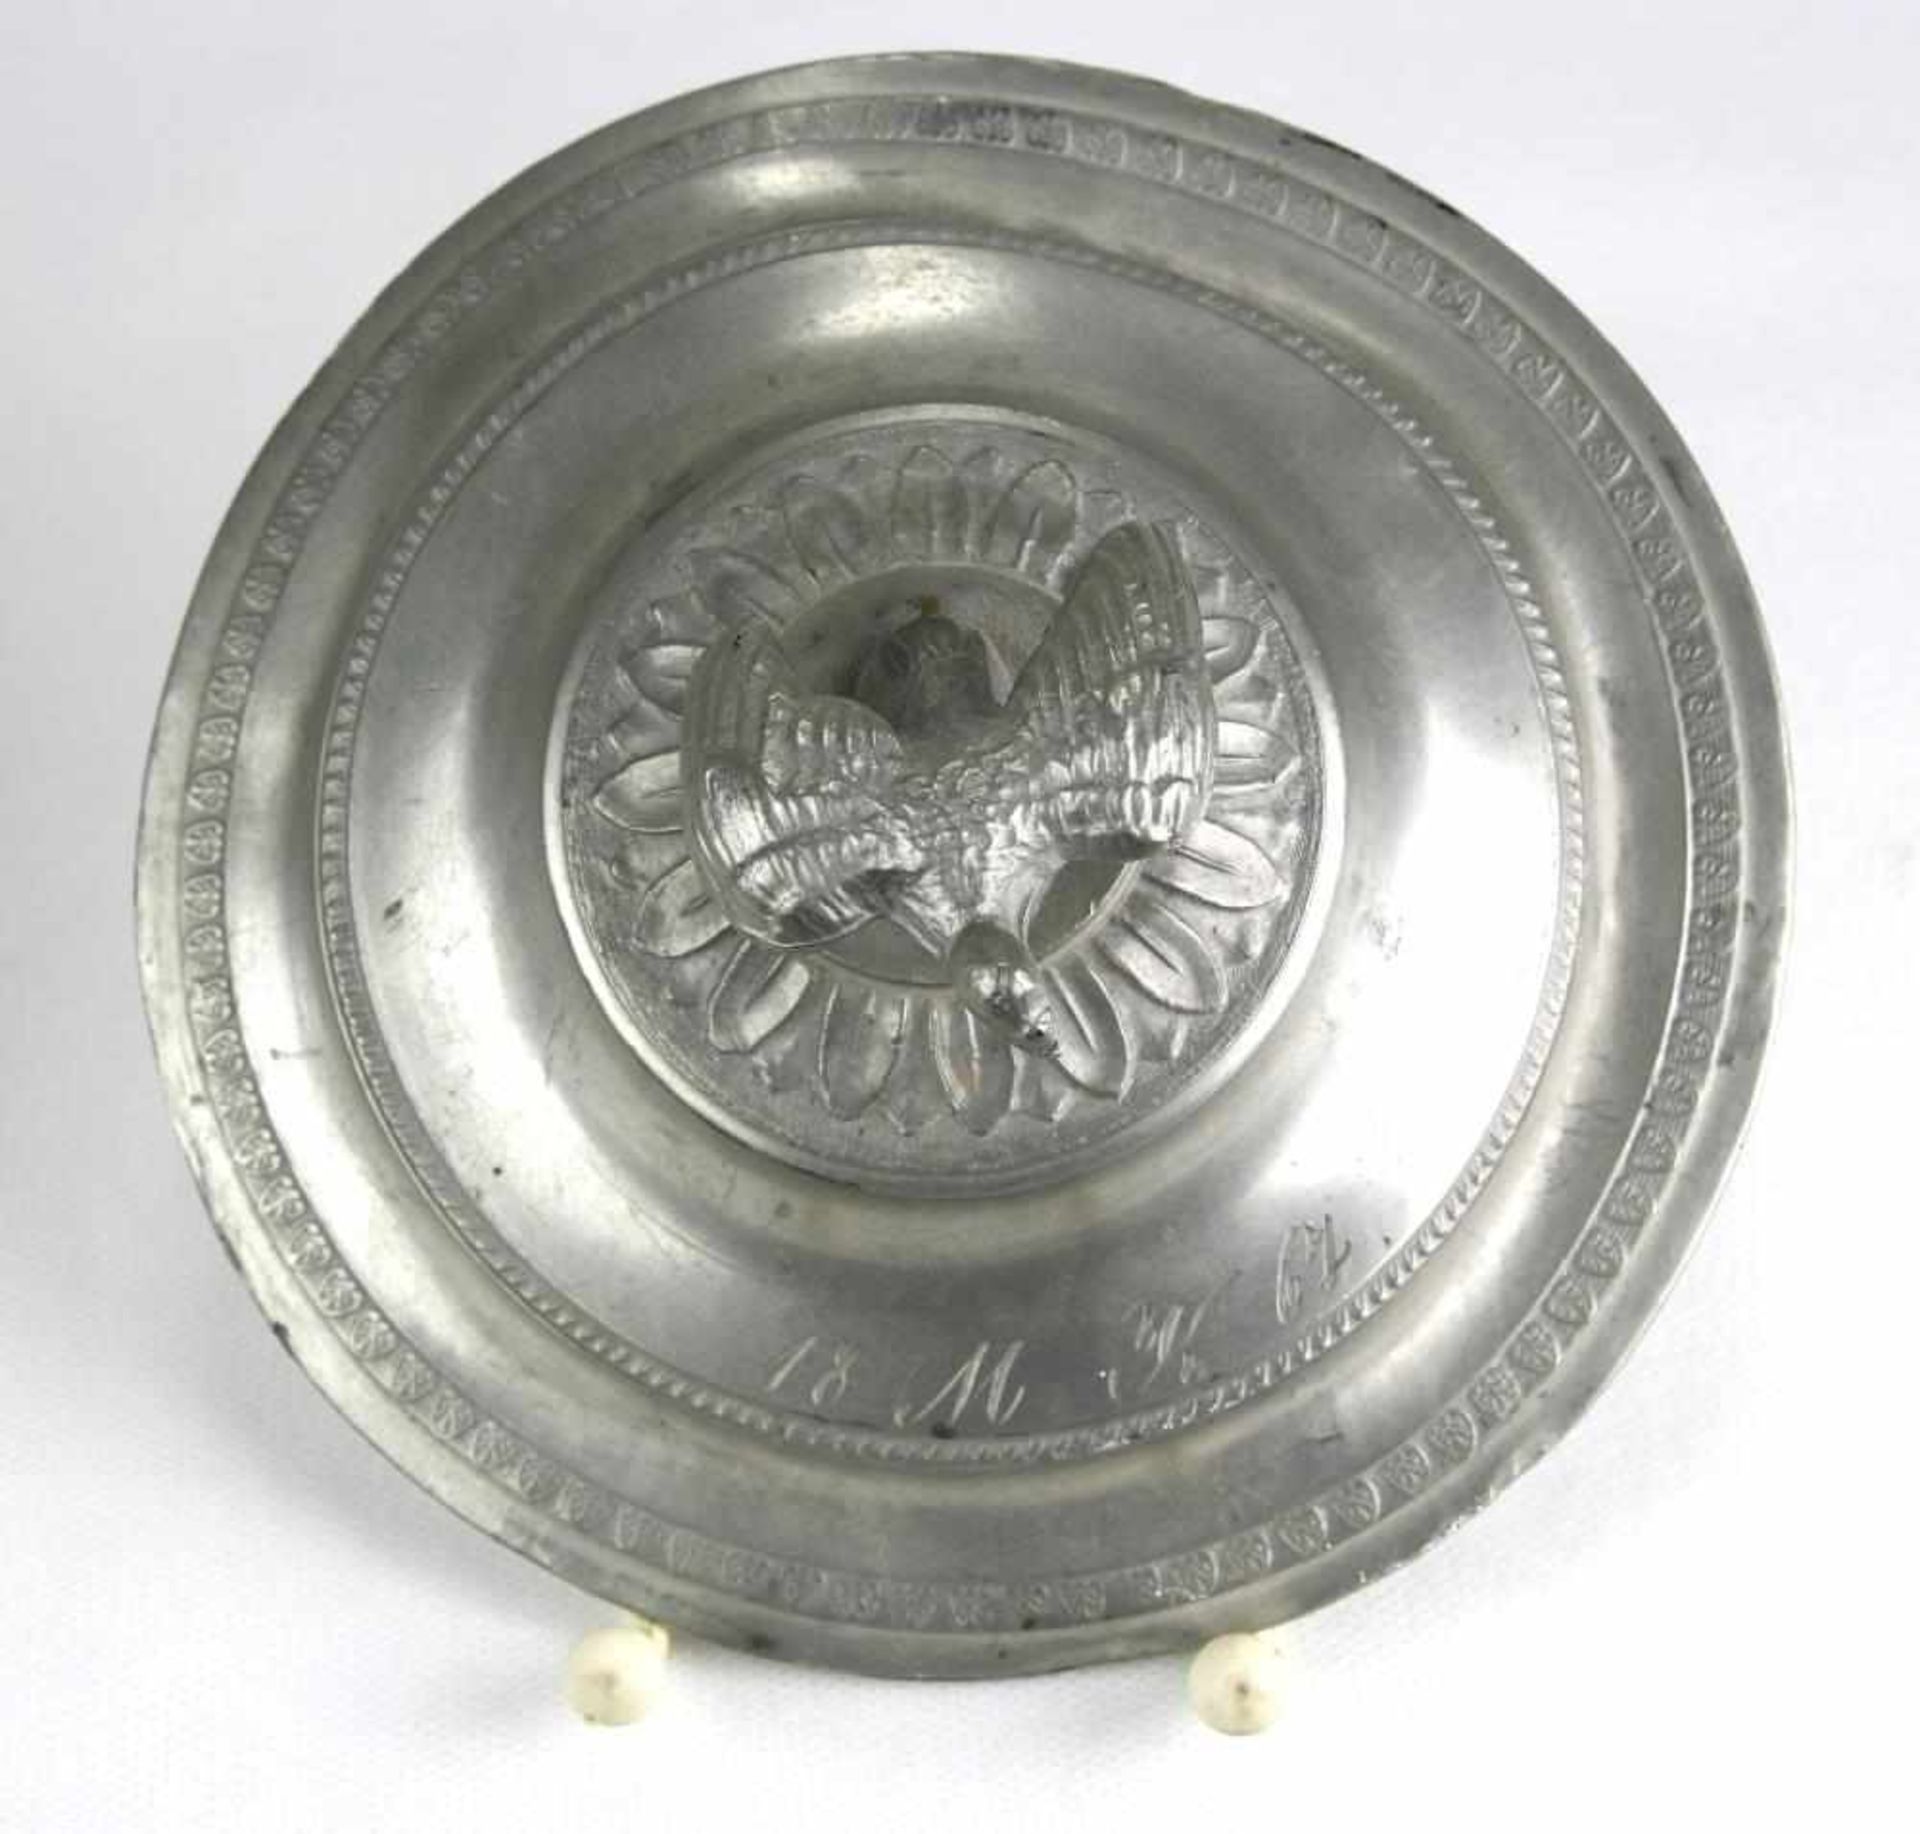 Taufgefäß. 19. Jahrhundert. Zinn. Initialen und Datum 1867. Durchmesser ca. 15 cm, Höhe ca. 13,5 cm. - Image 4 of 5